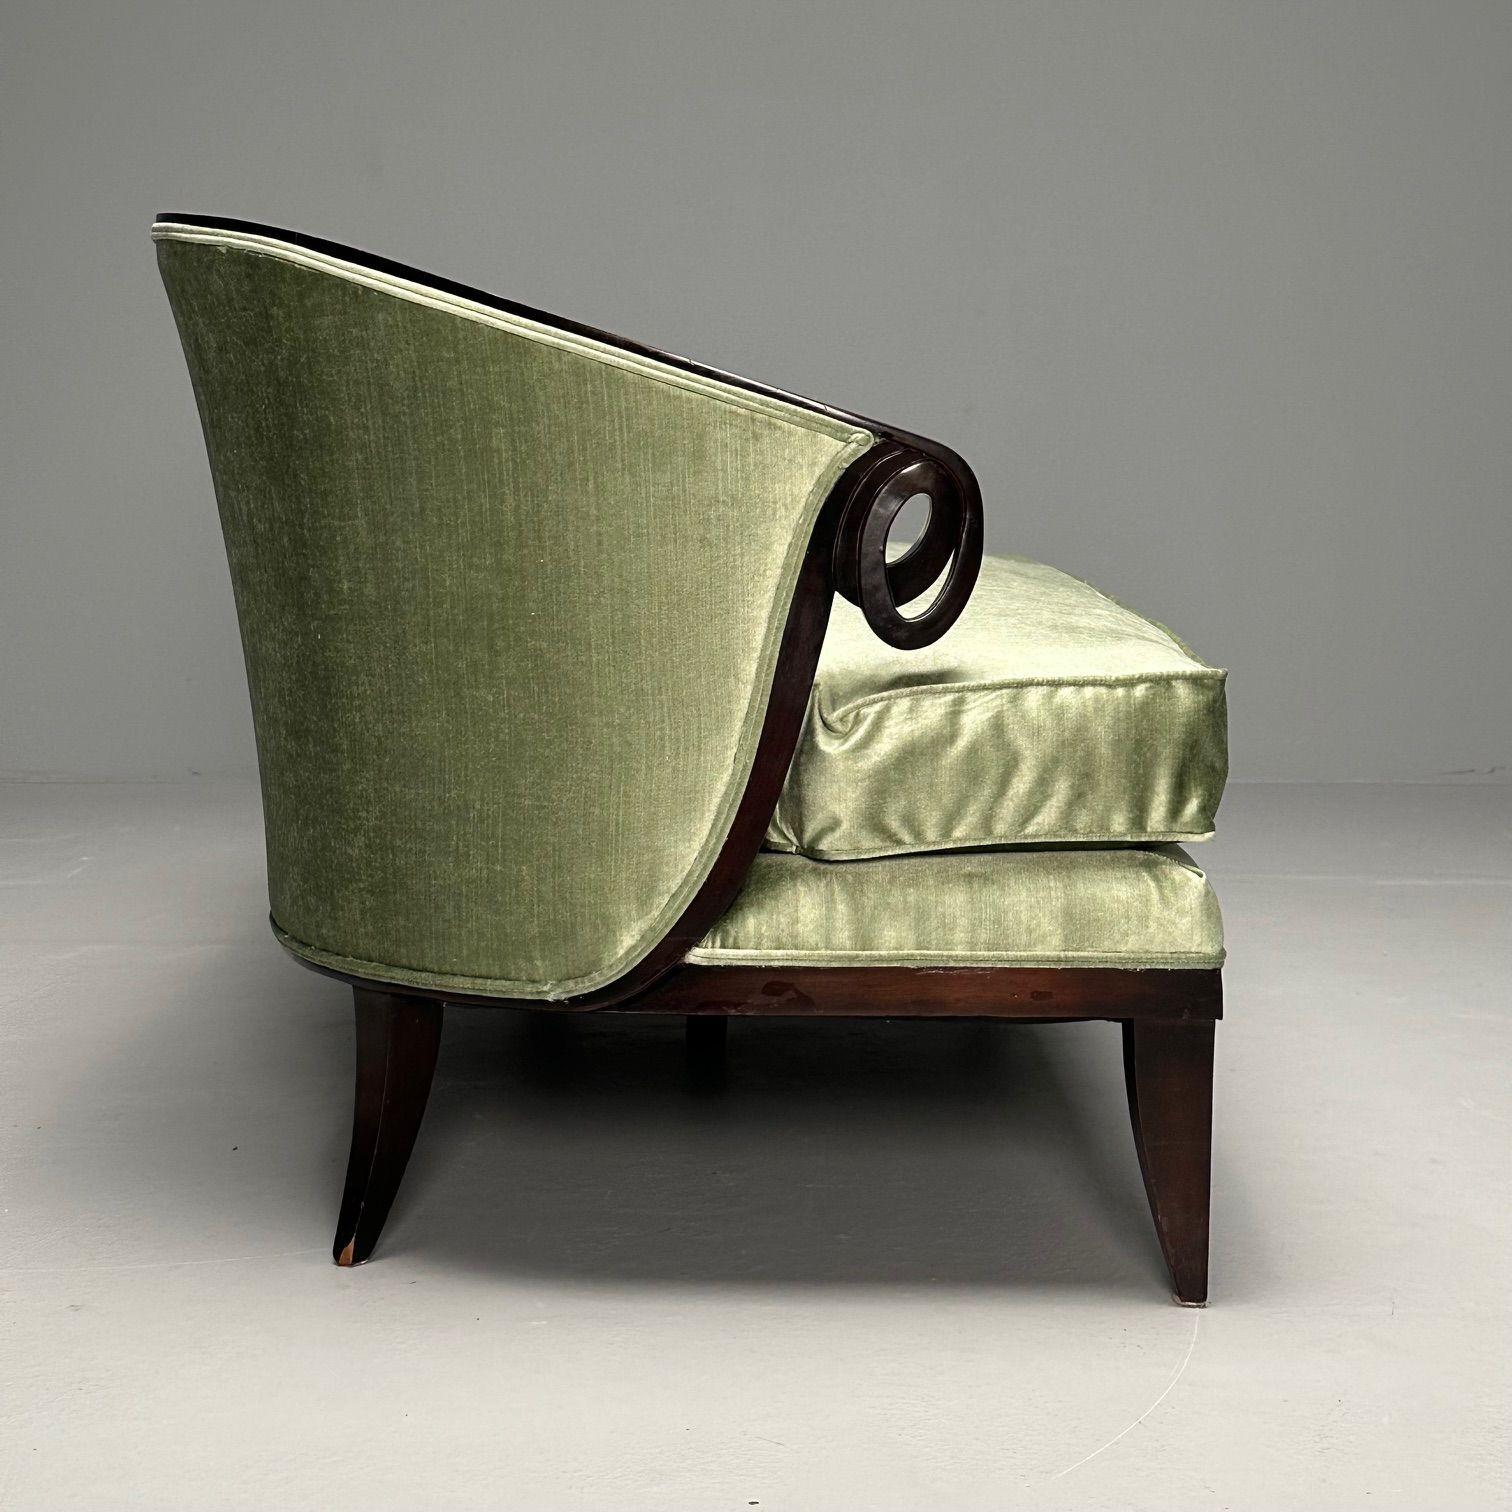 Velours Christopher Guy, Contemporary, Modern Sofa, Mint Green Velvet, Black Wood